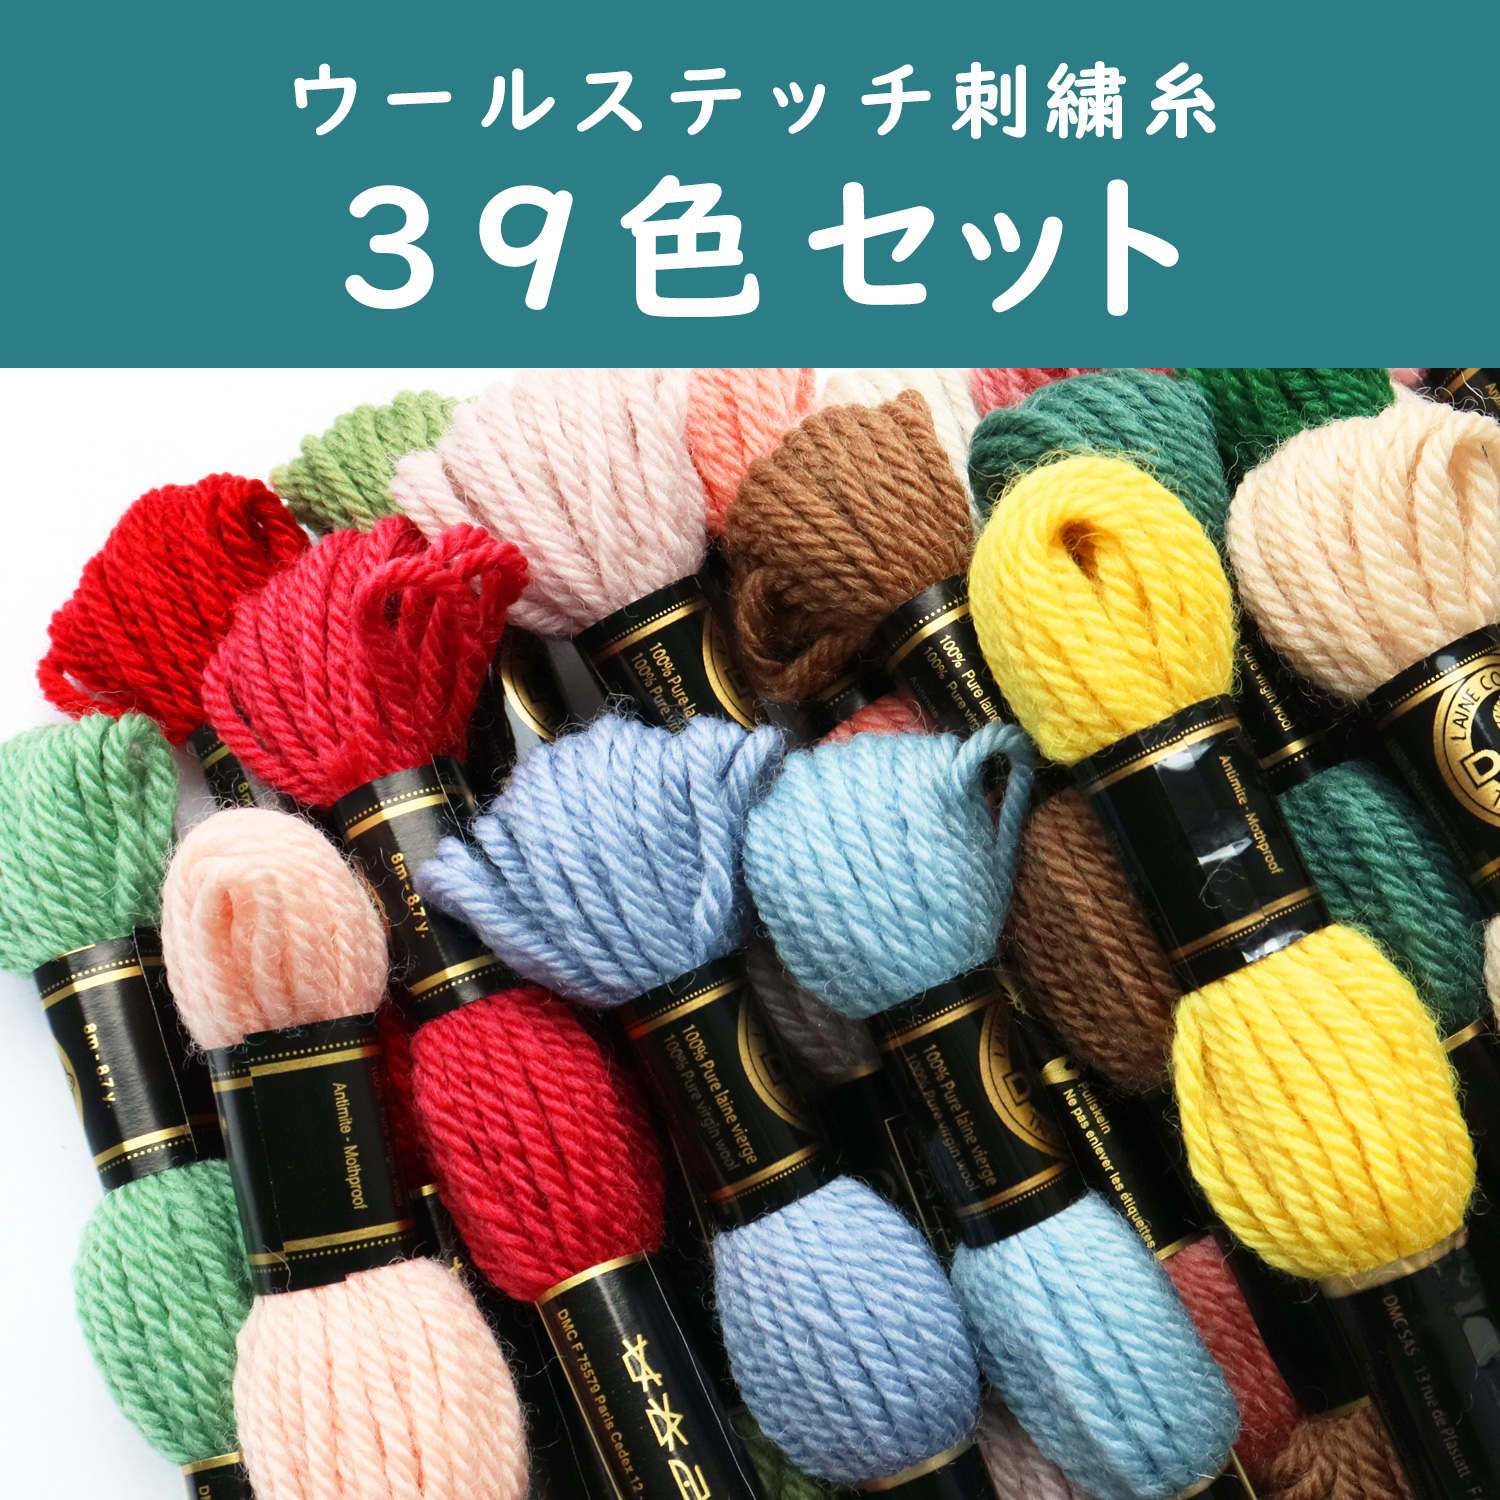 DMC486-39SET 刺繍の愉しみ糸39色セット (セット)